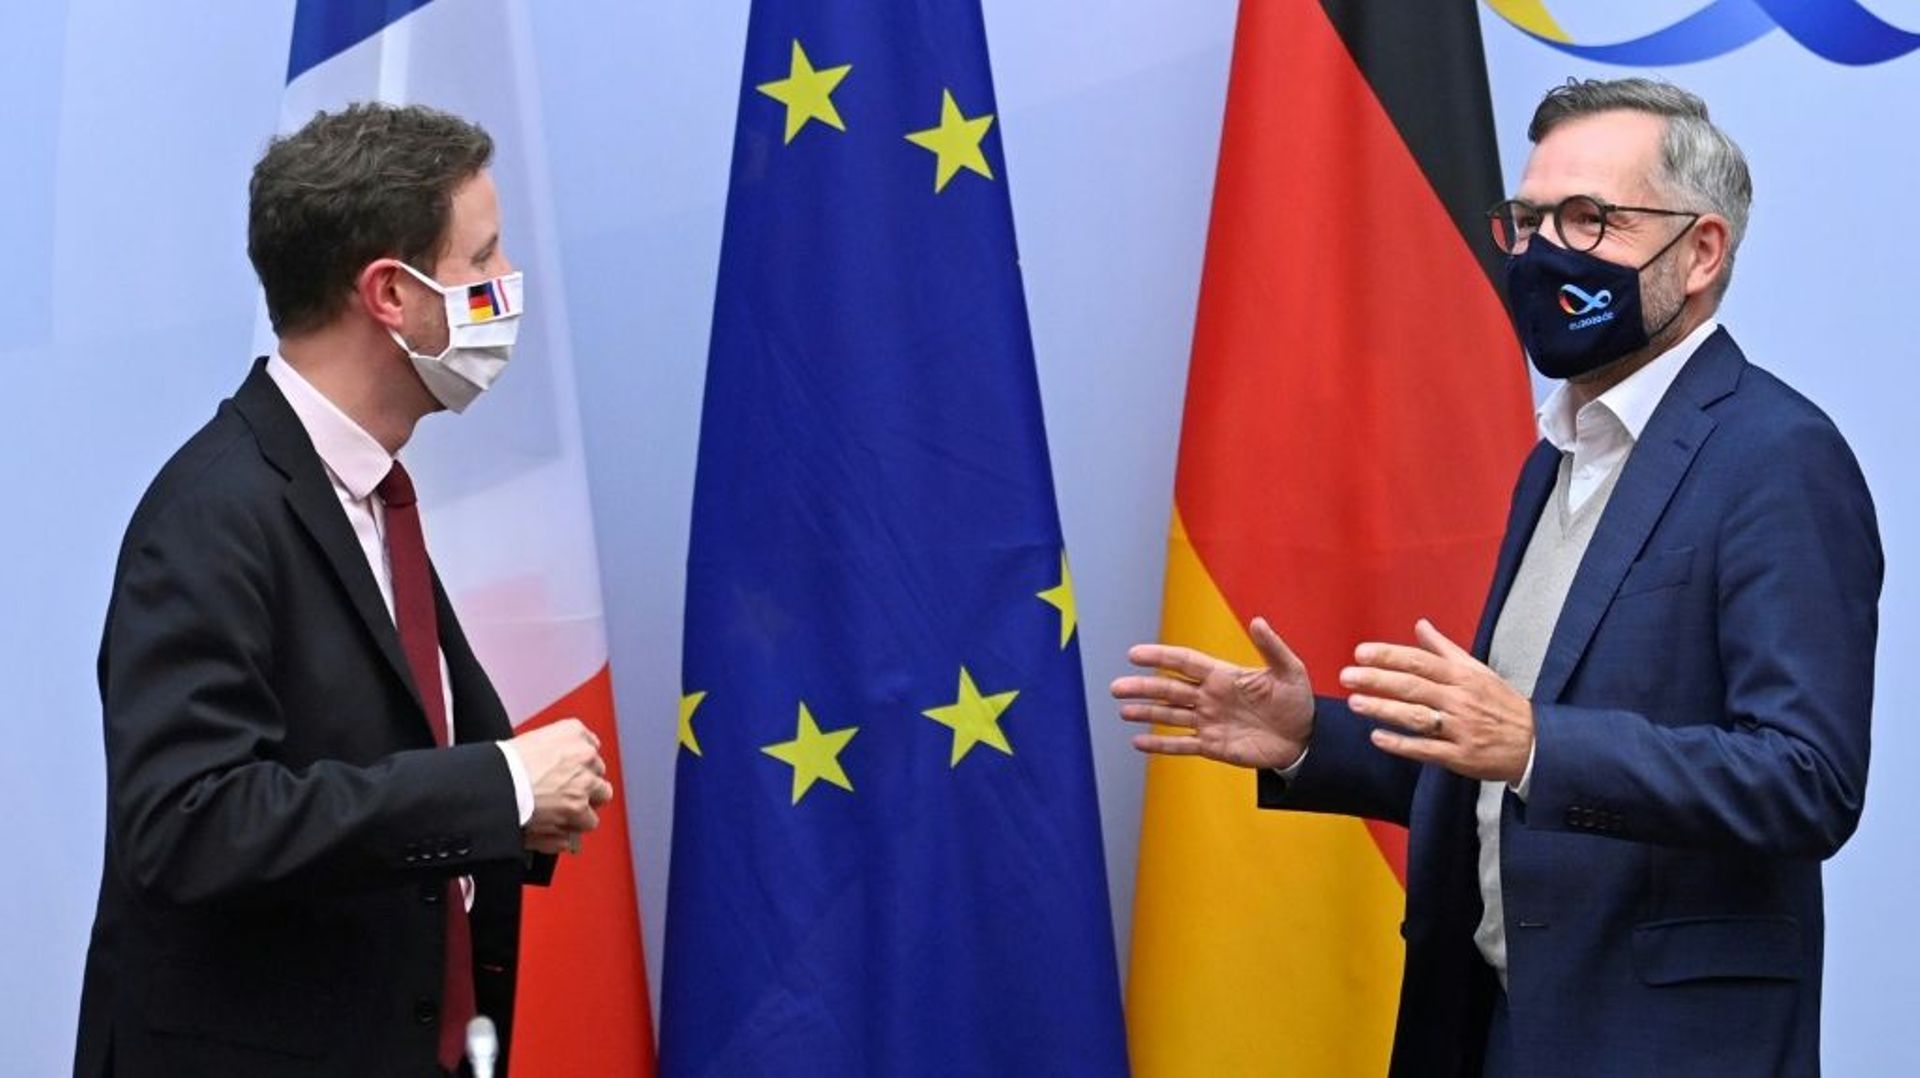 Le secrétaire d'Etat français aux affaires européennes Clément Beaune (à gauche) et son homologue allemand Michael Roth, le 7 septembre 2020 à Berlin